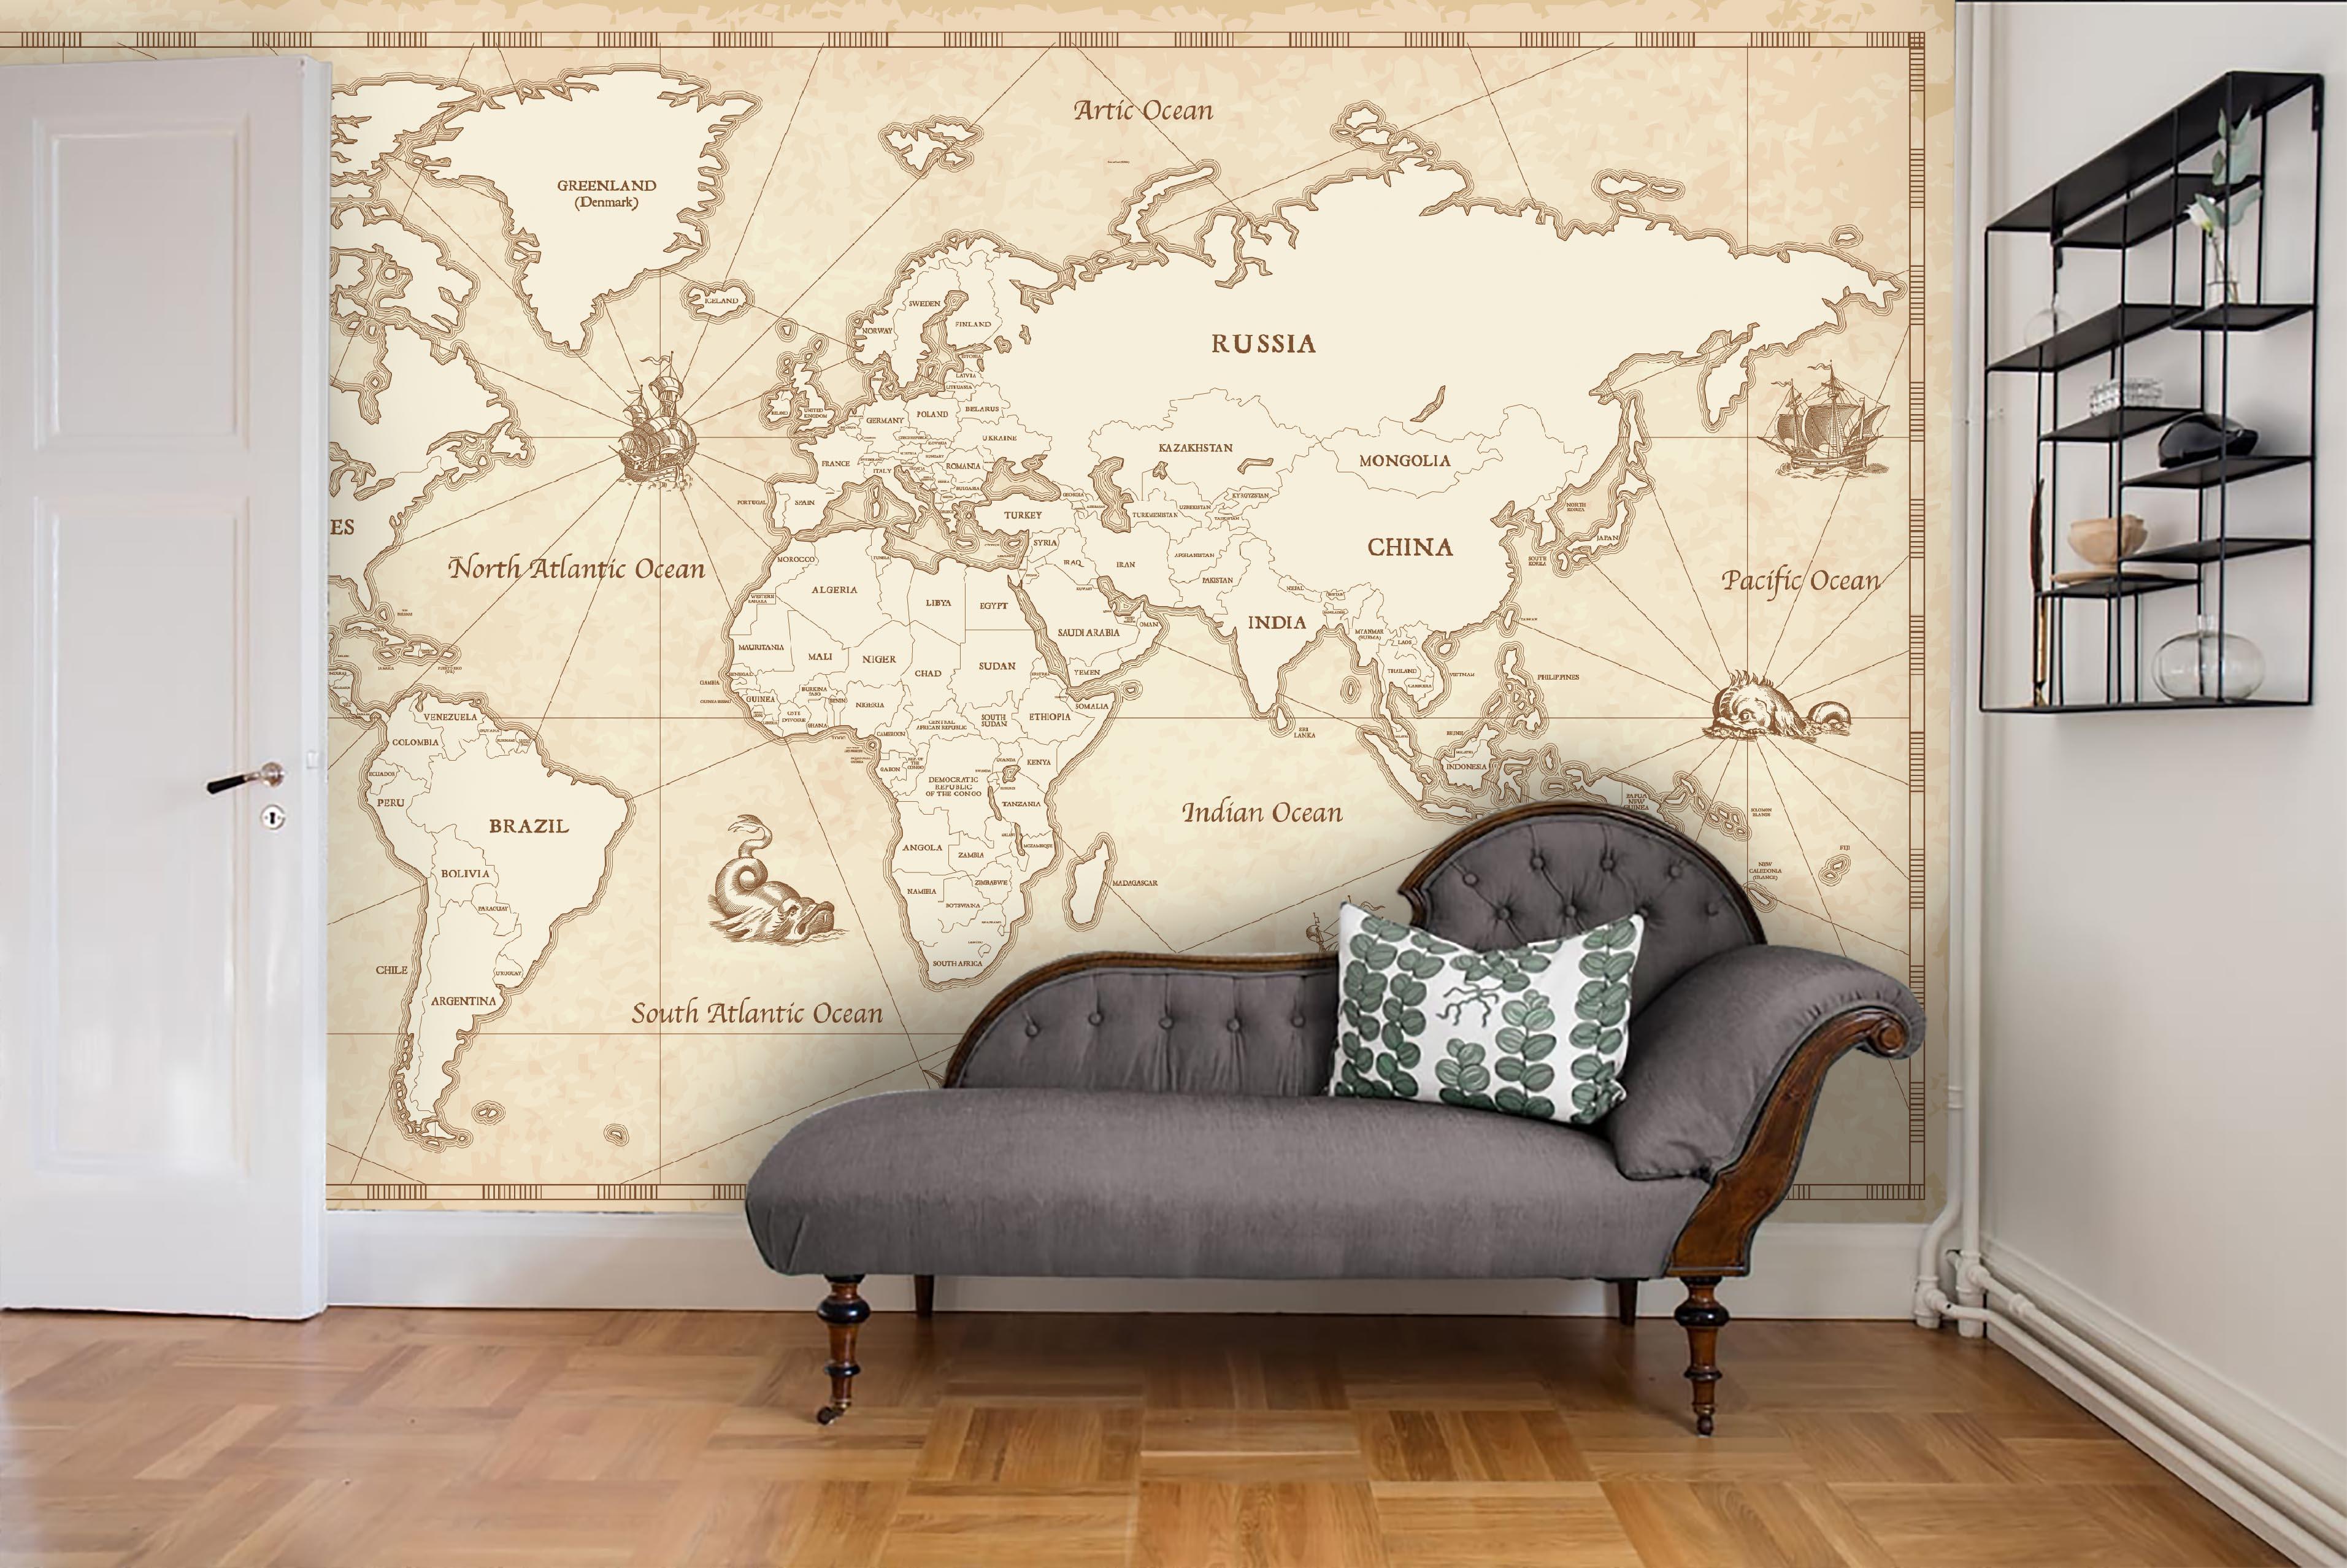 3D Retro World Map Wall Mural Wallpaper LQH 16- Jess Art Decoration